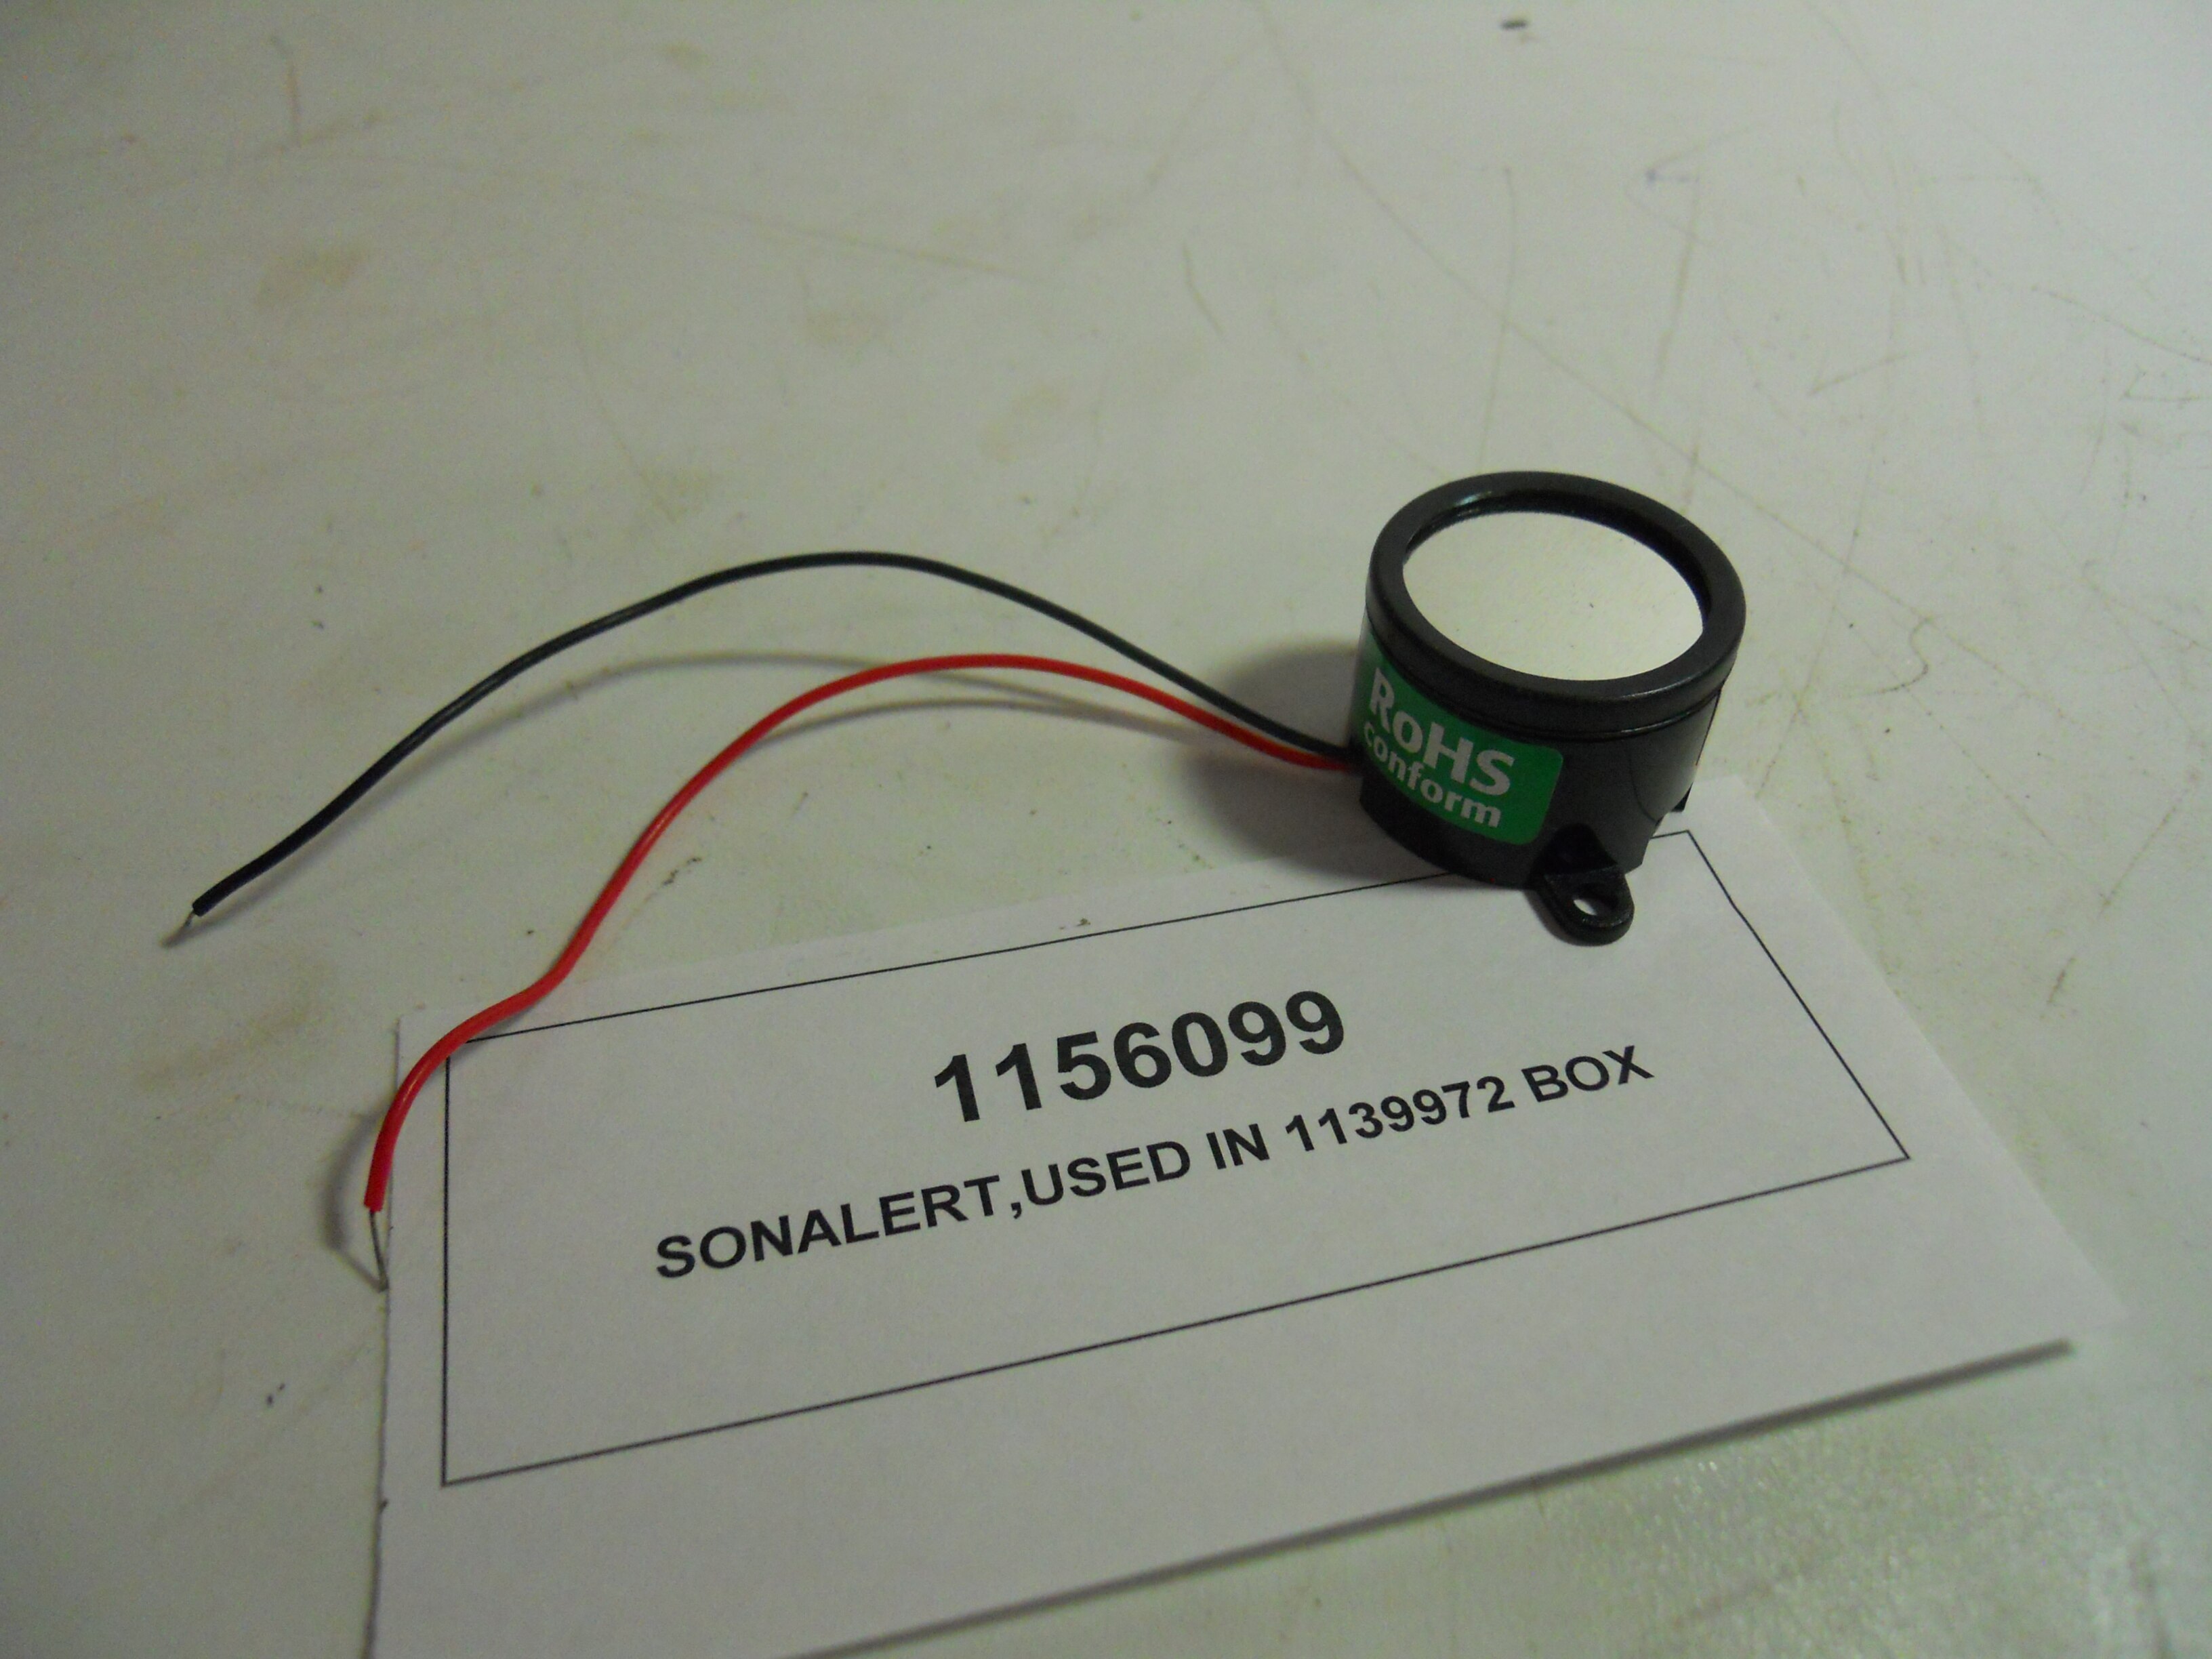 SONALERT,USED IN 1139972 BOX